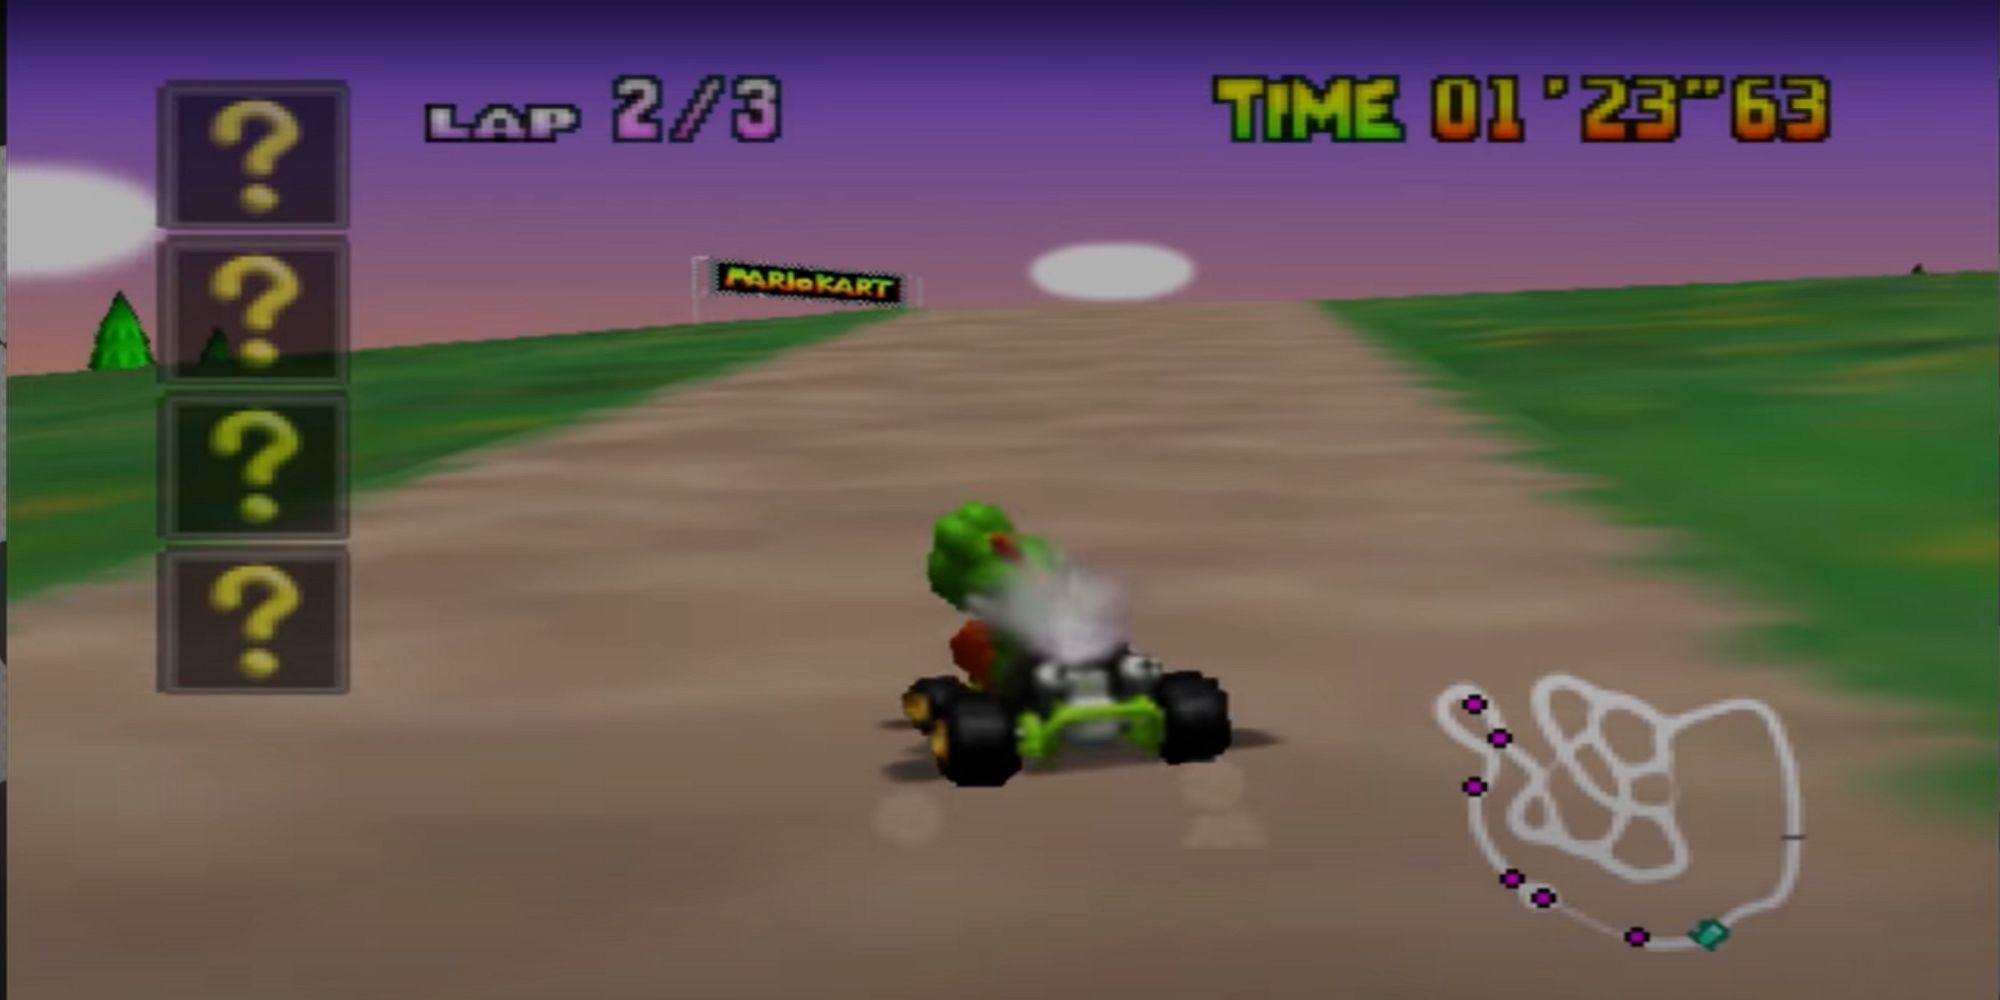 Yoshi riding a course in Mario Kart 2